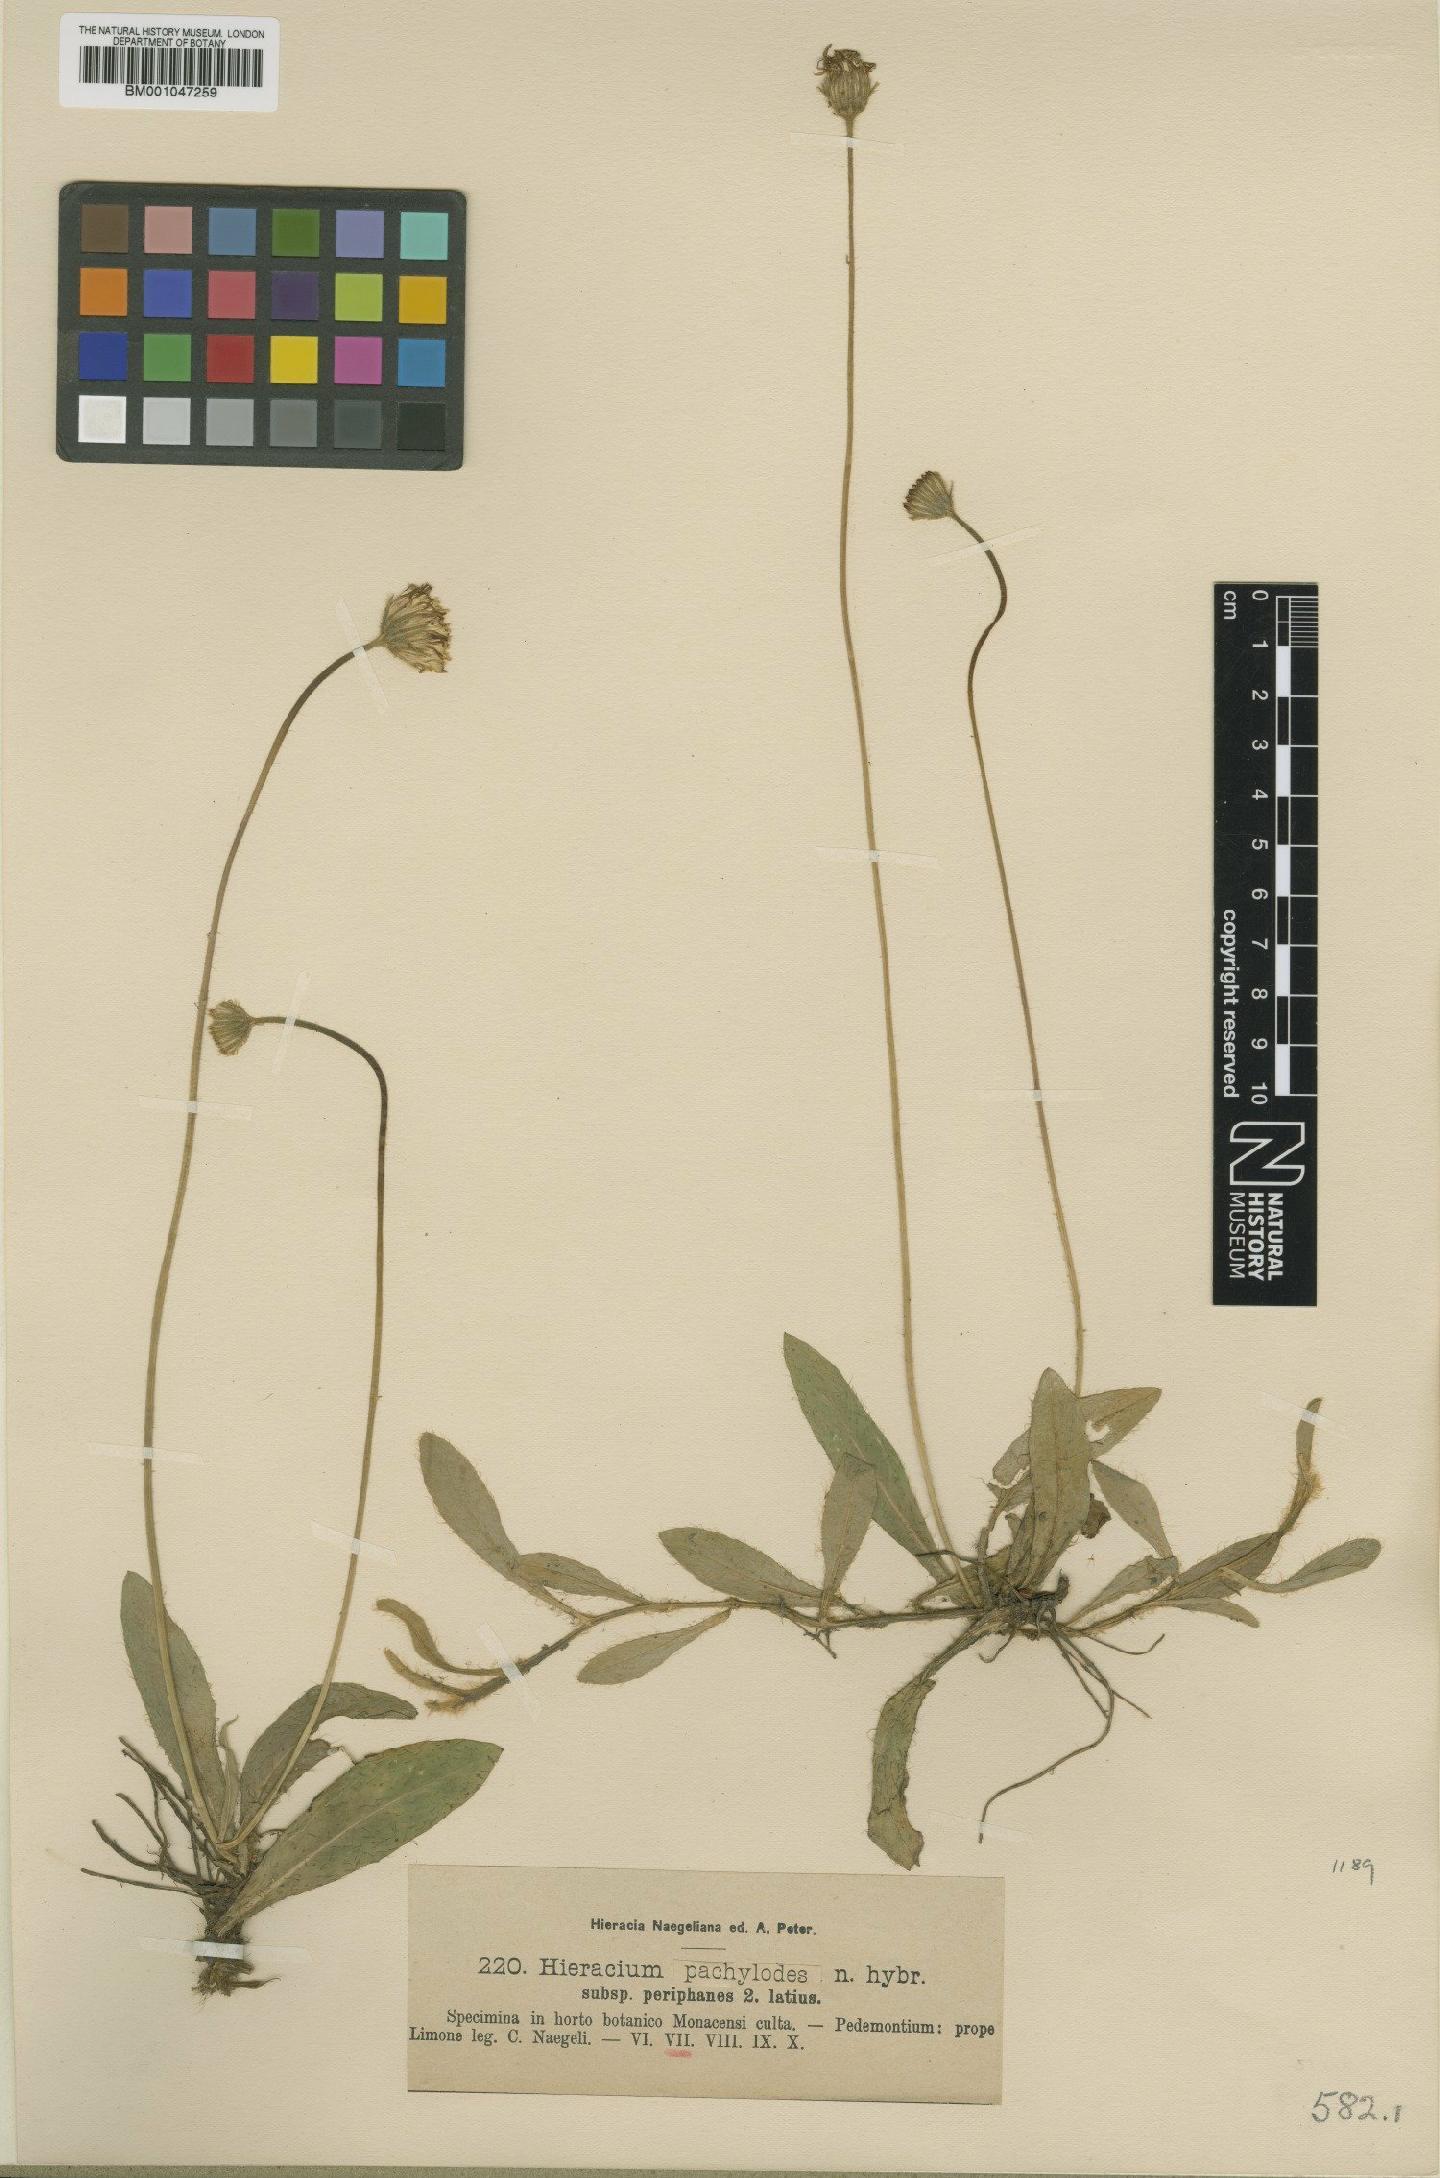 To NHMUK collection (Hieracium pachylodes subsp. aphanes Zahn; NHMUK:ecatalogue:2757006)